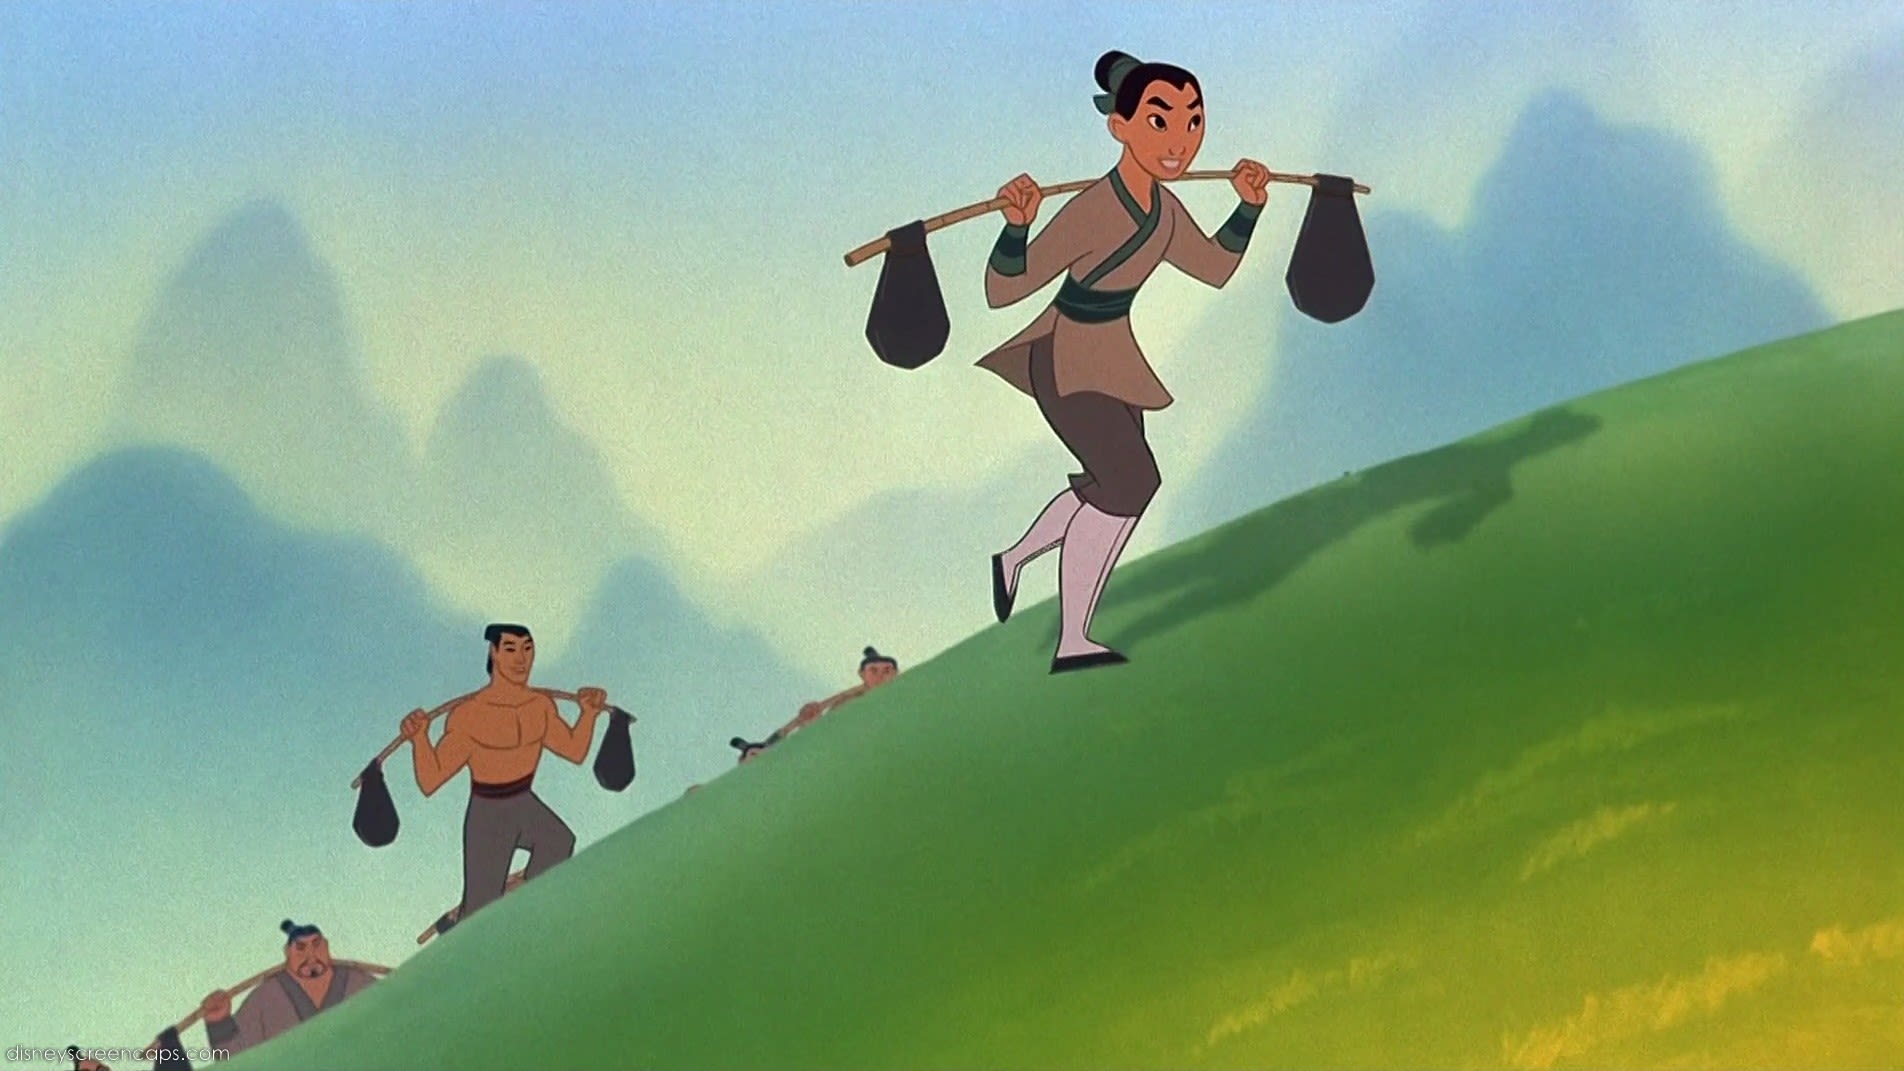 Disney Developing Live-Action 'Mulan' | CNN